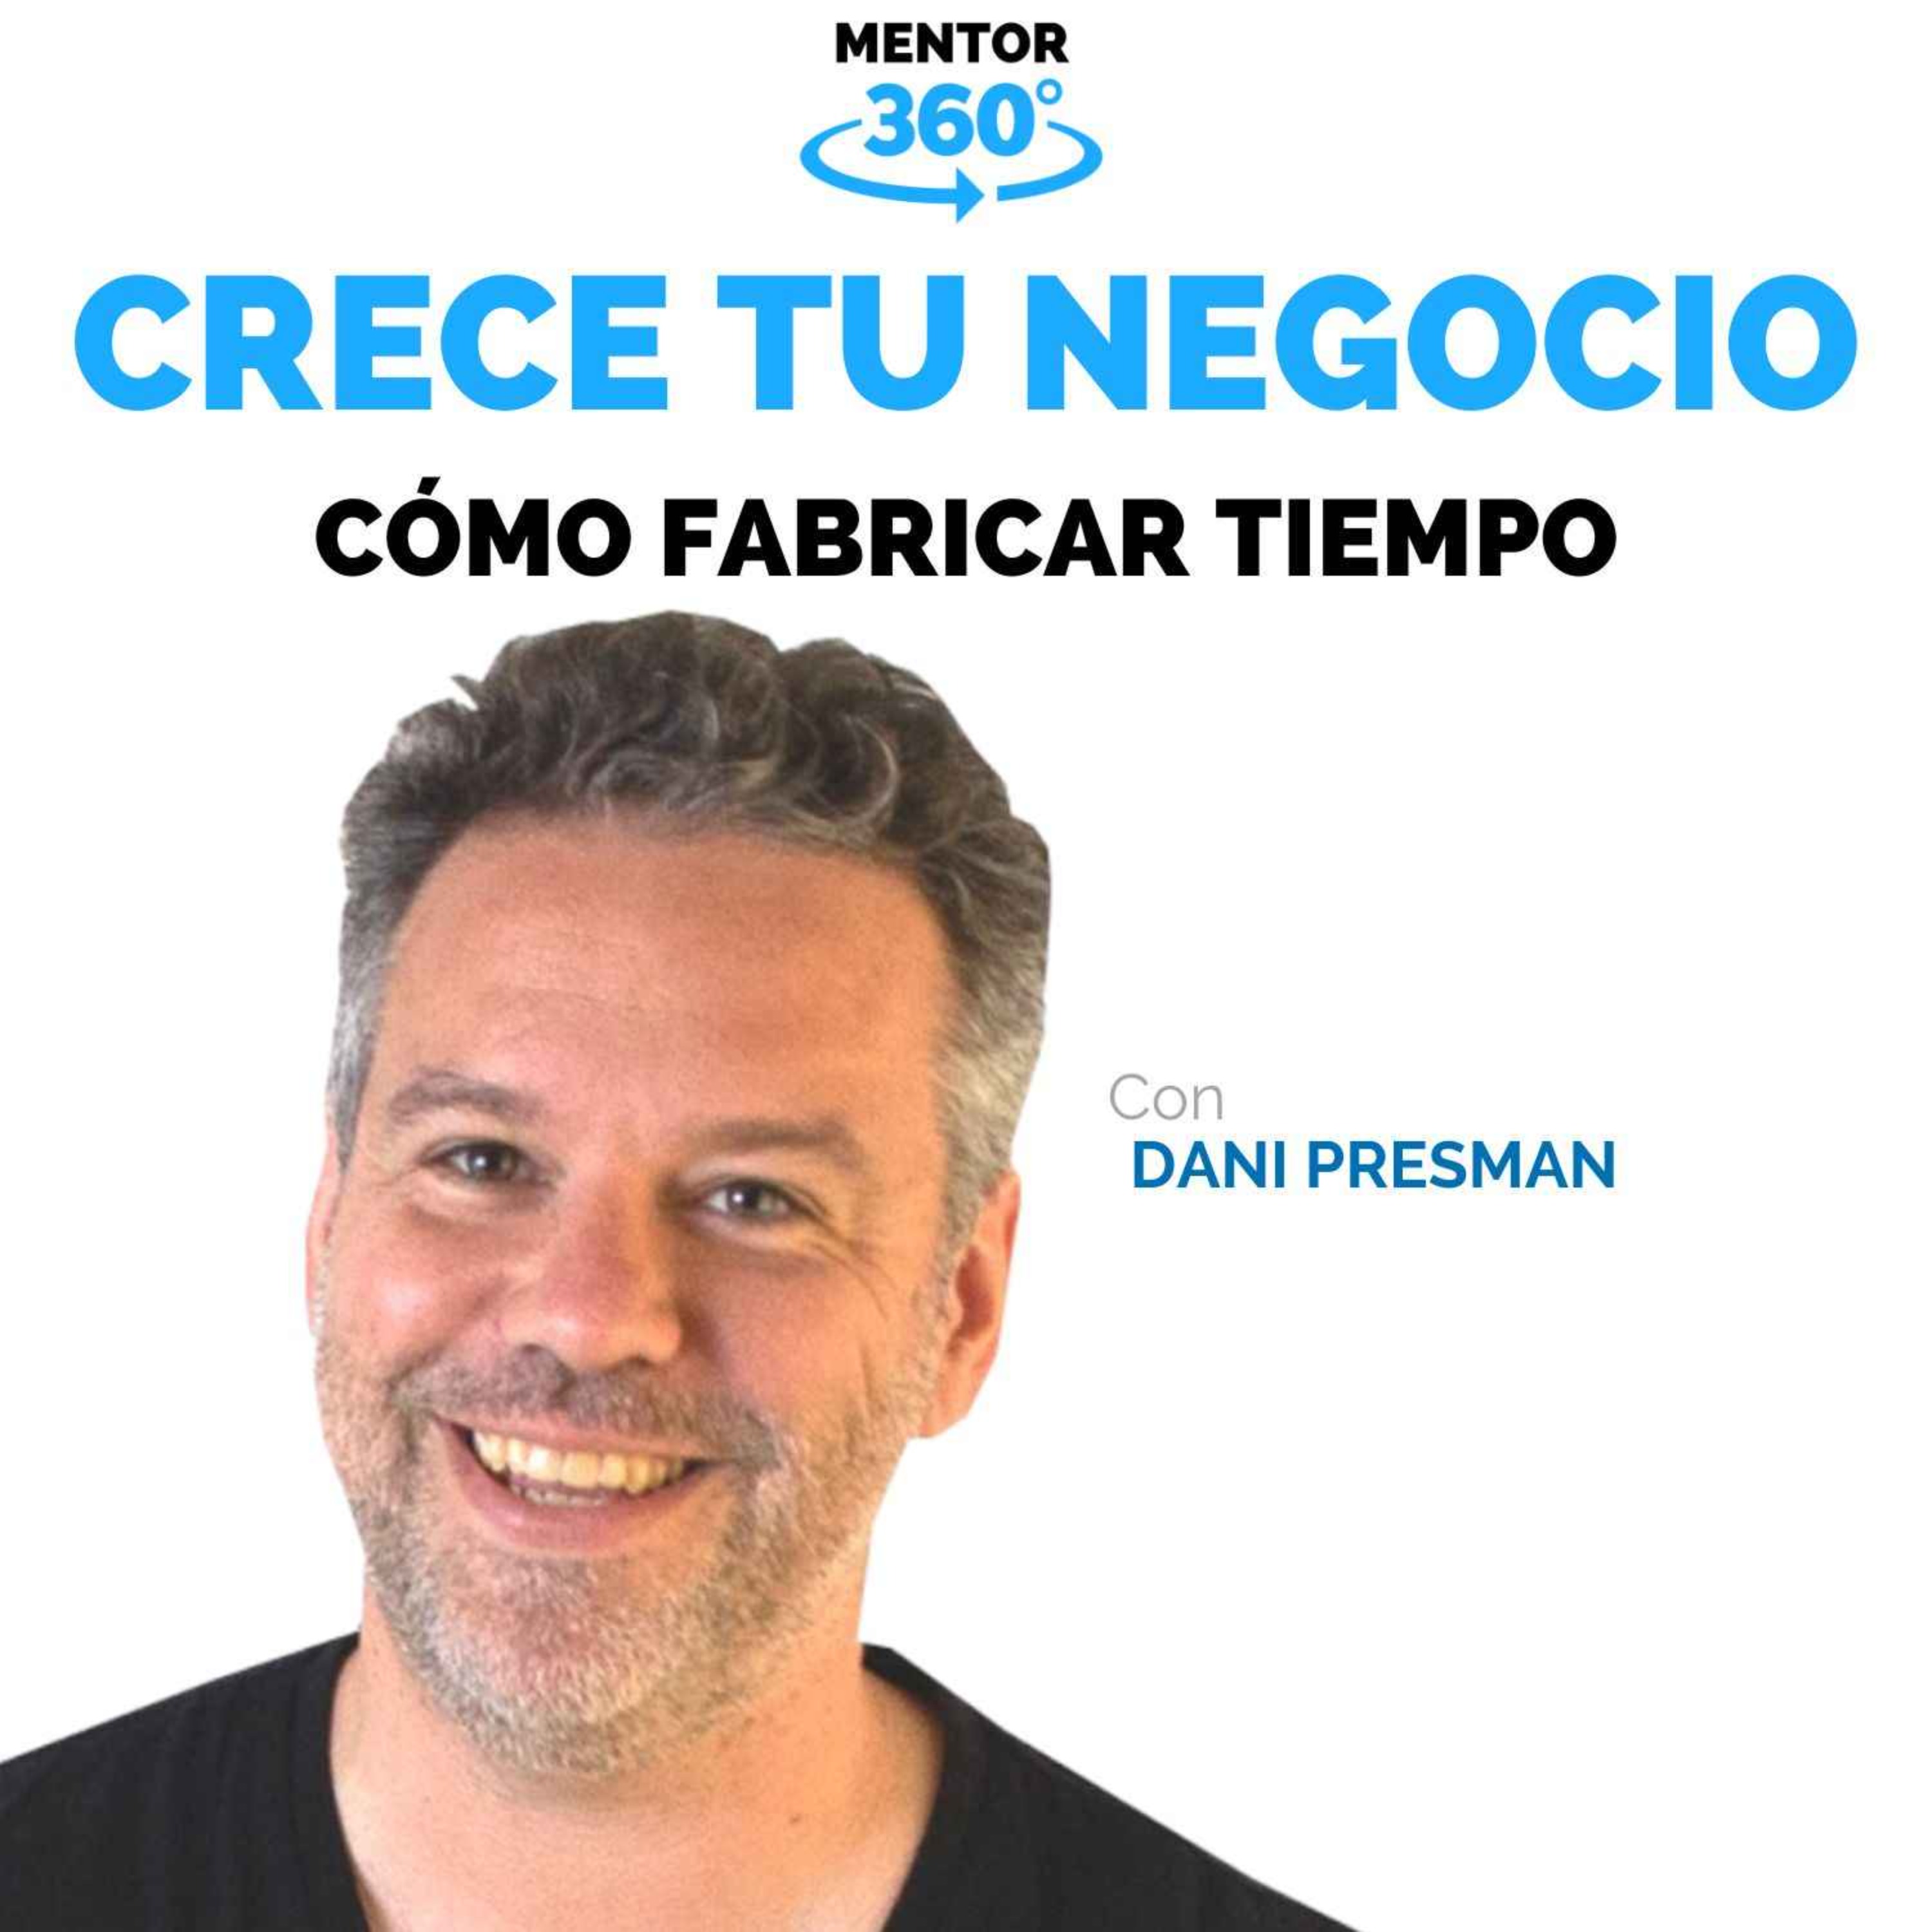 Cómo Fabricar Tiempo - Dani Presman - Crece Tu Negocio - MENTOR360